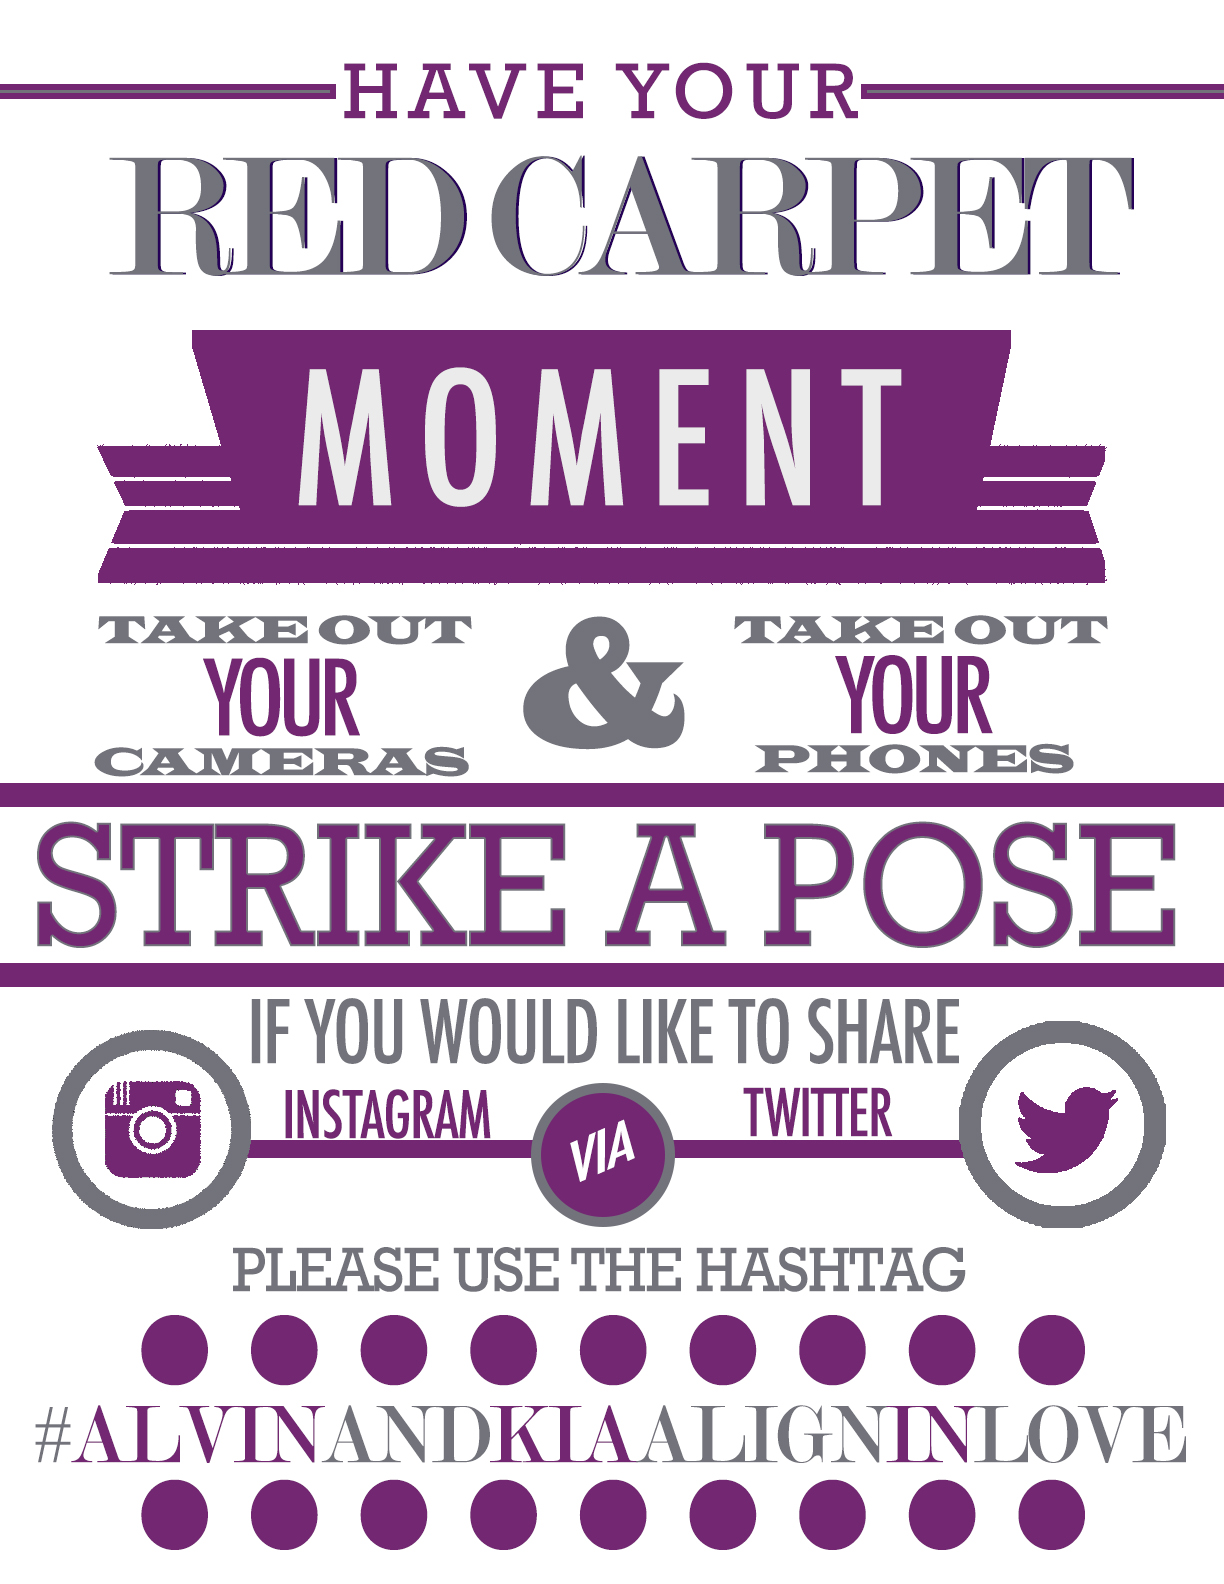 LaFete - Red Carpet Moment Sign v2.jpg